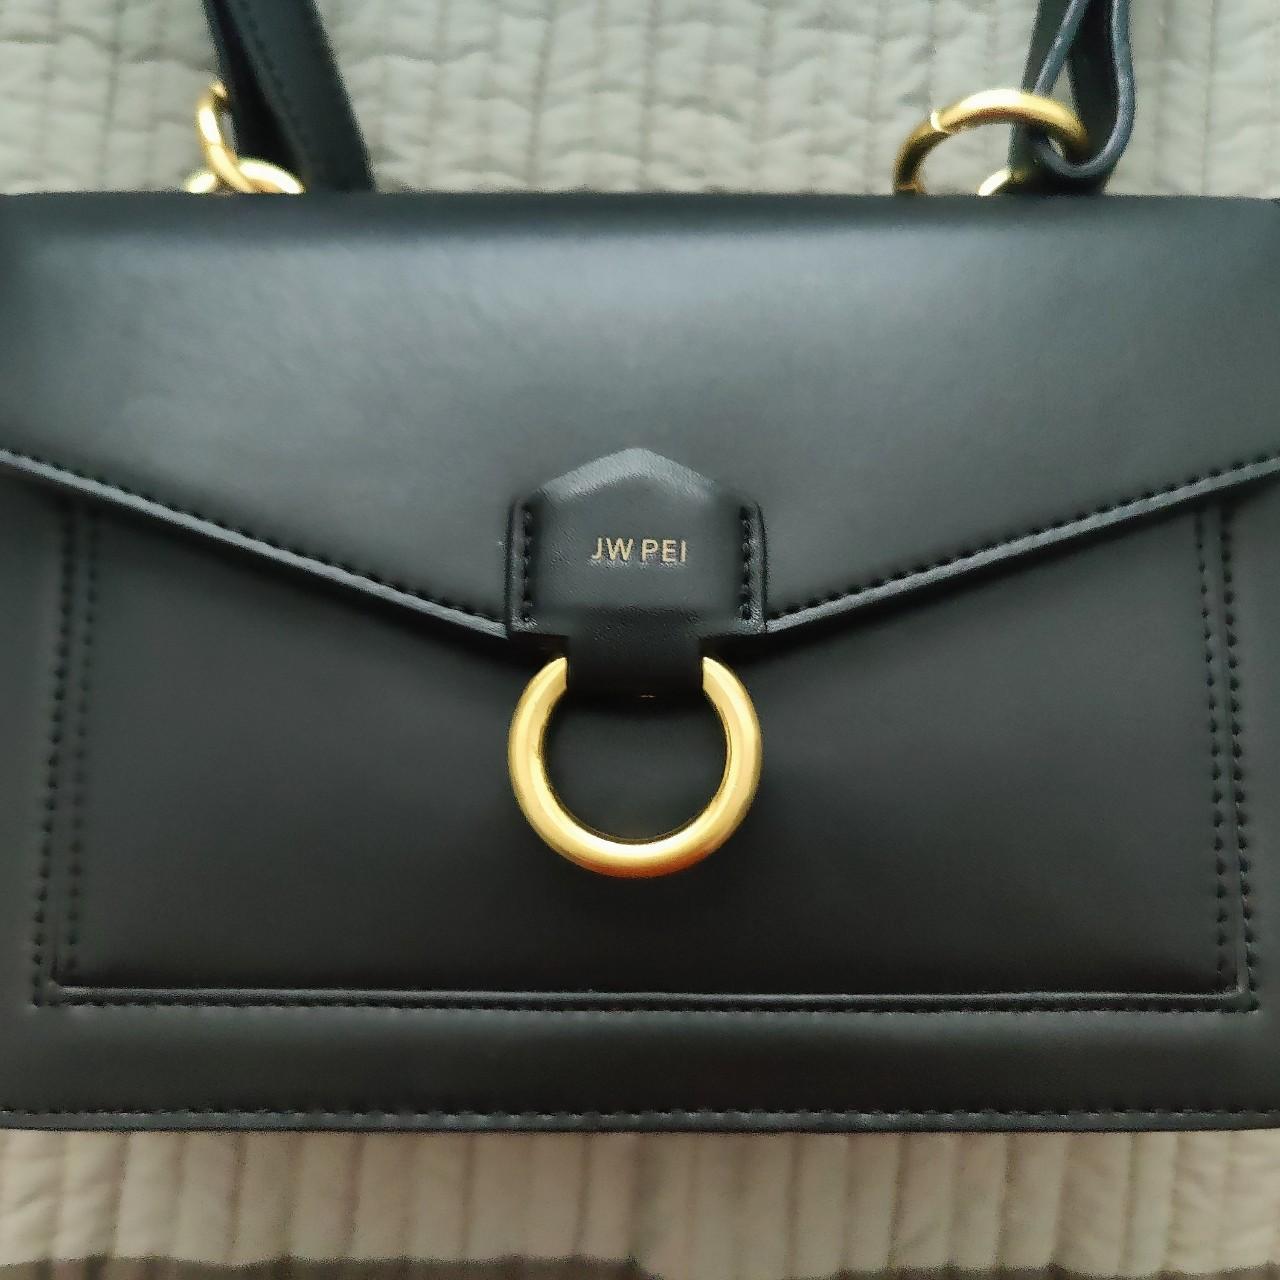 JW Pei Envelope Crossbody Bag in Black Gold - Depop